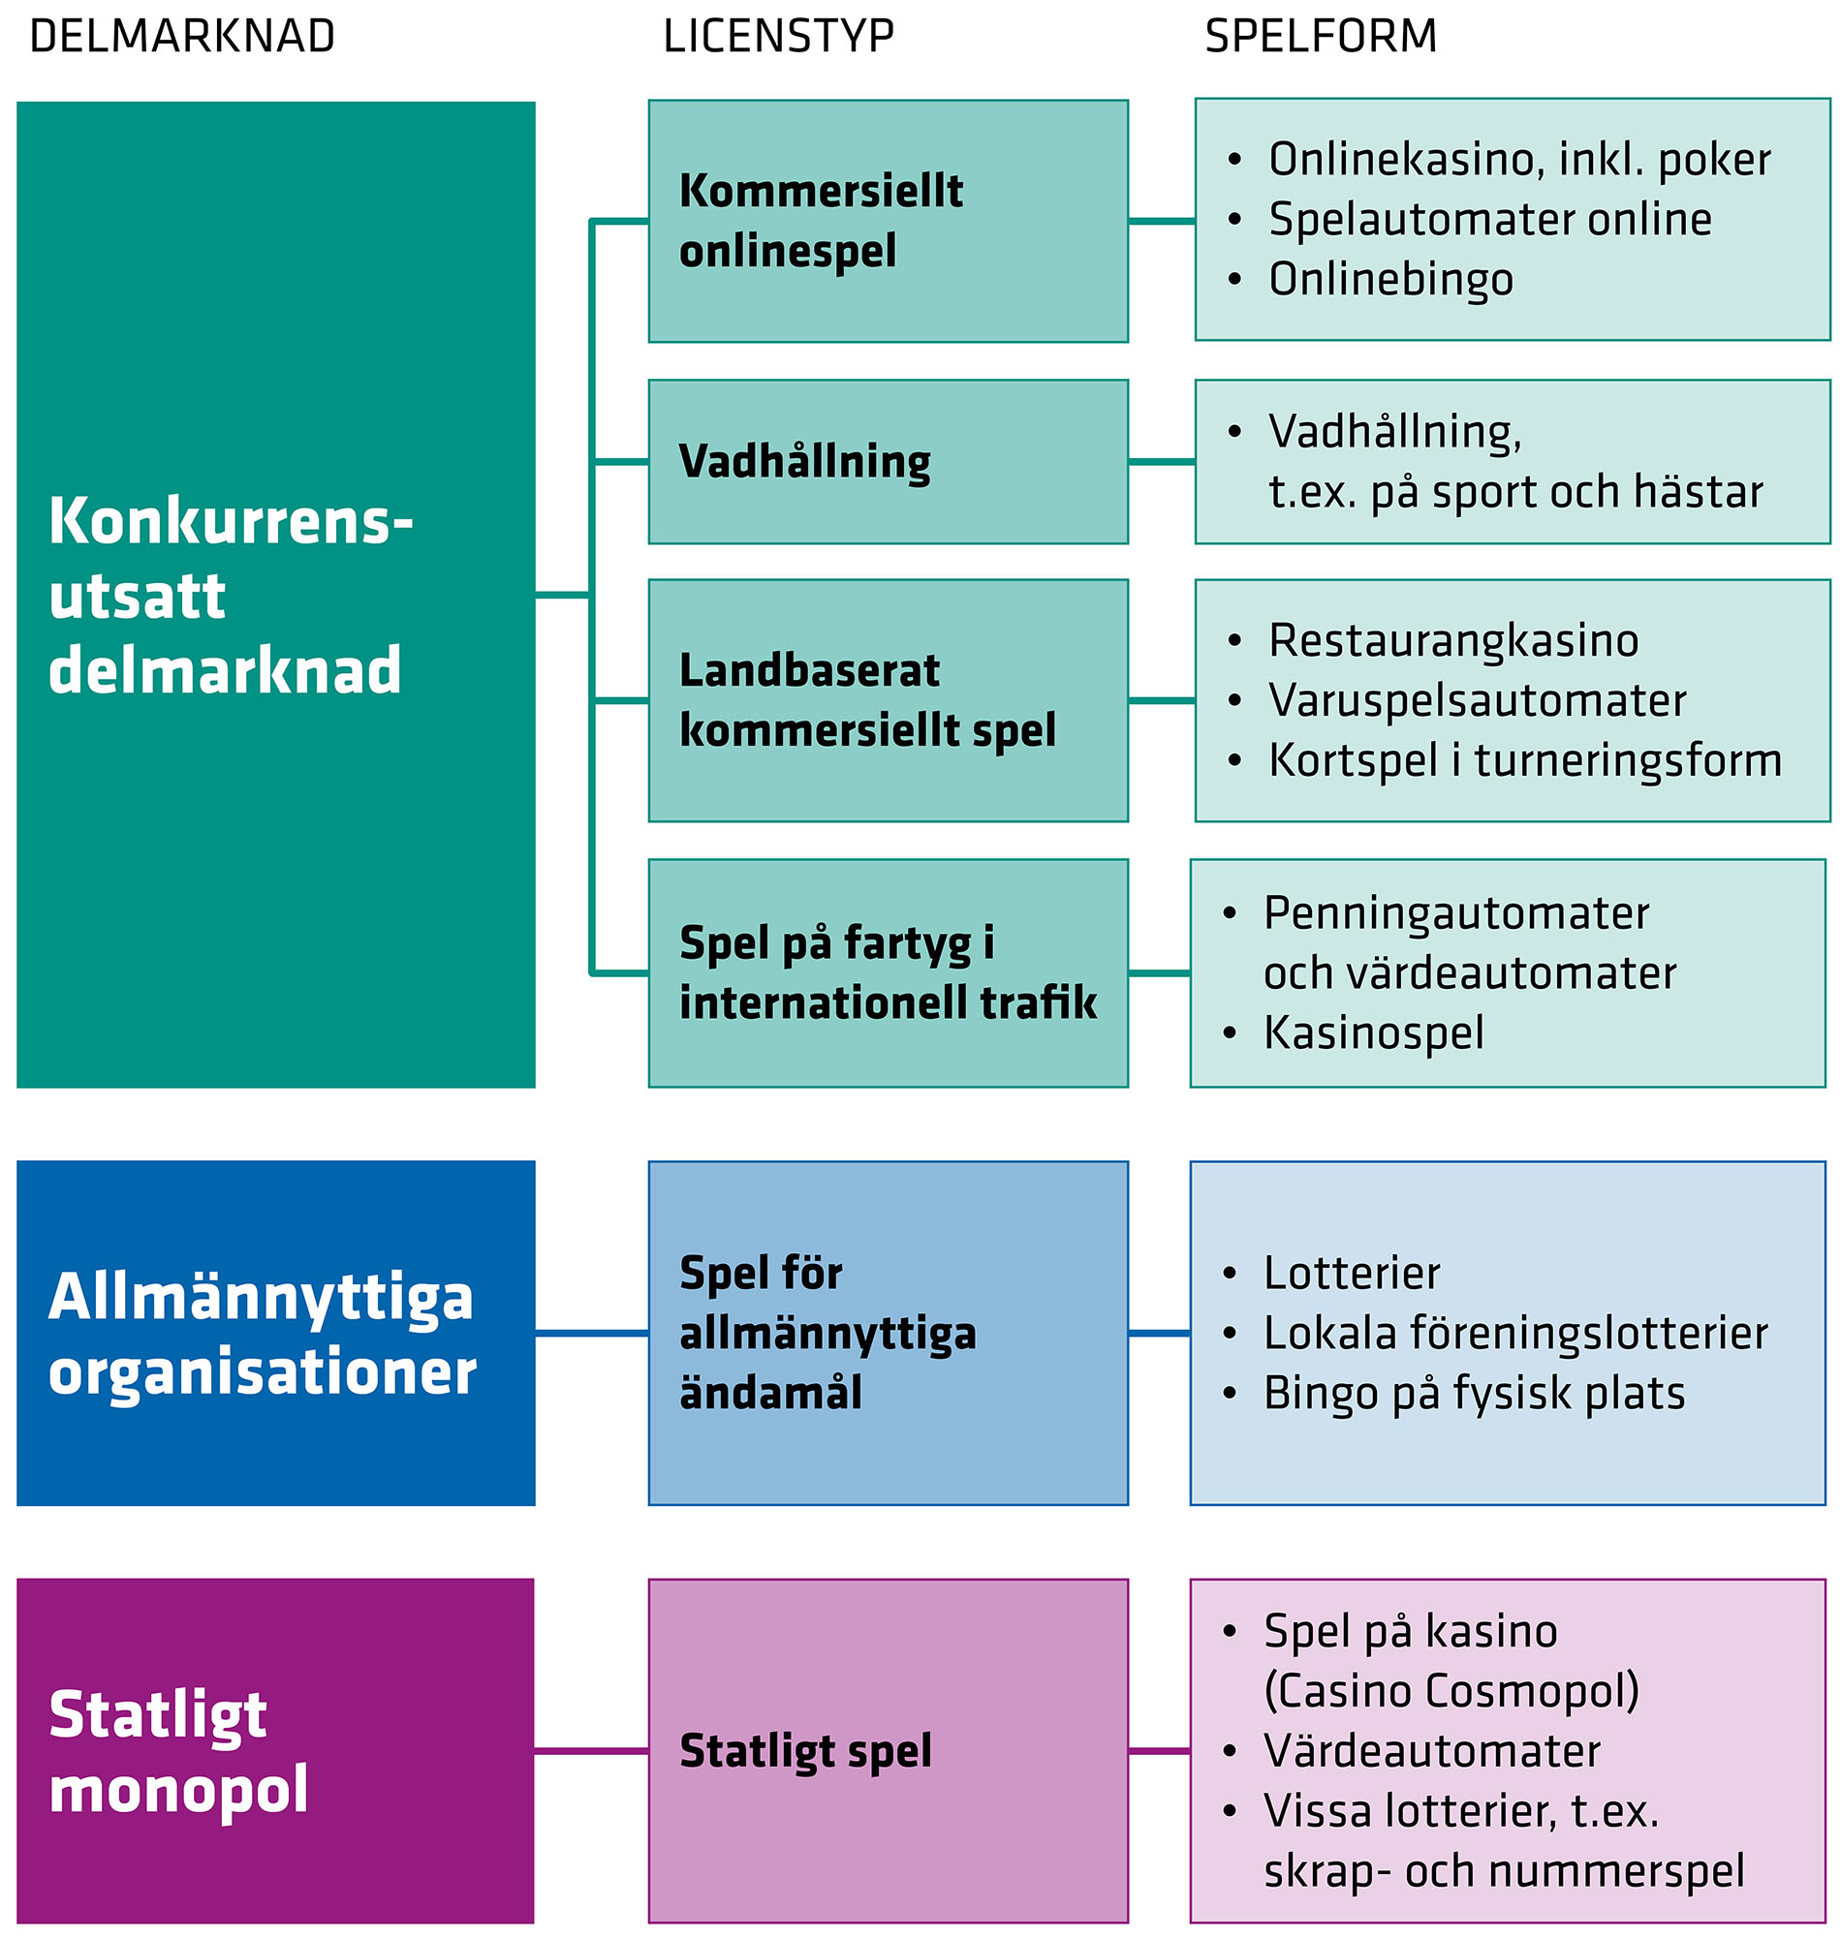 Schematisk bild på hur den svenska spelmarknaden ser ut efter omregleringen och hur nämnda spelformer och licenstyper relaterar till de tre olika delmarknaderna.